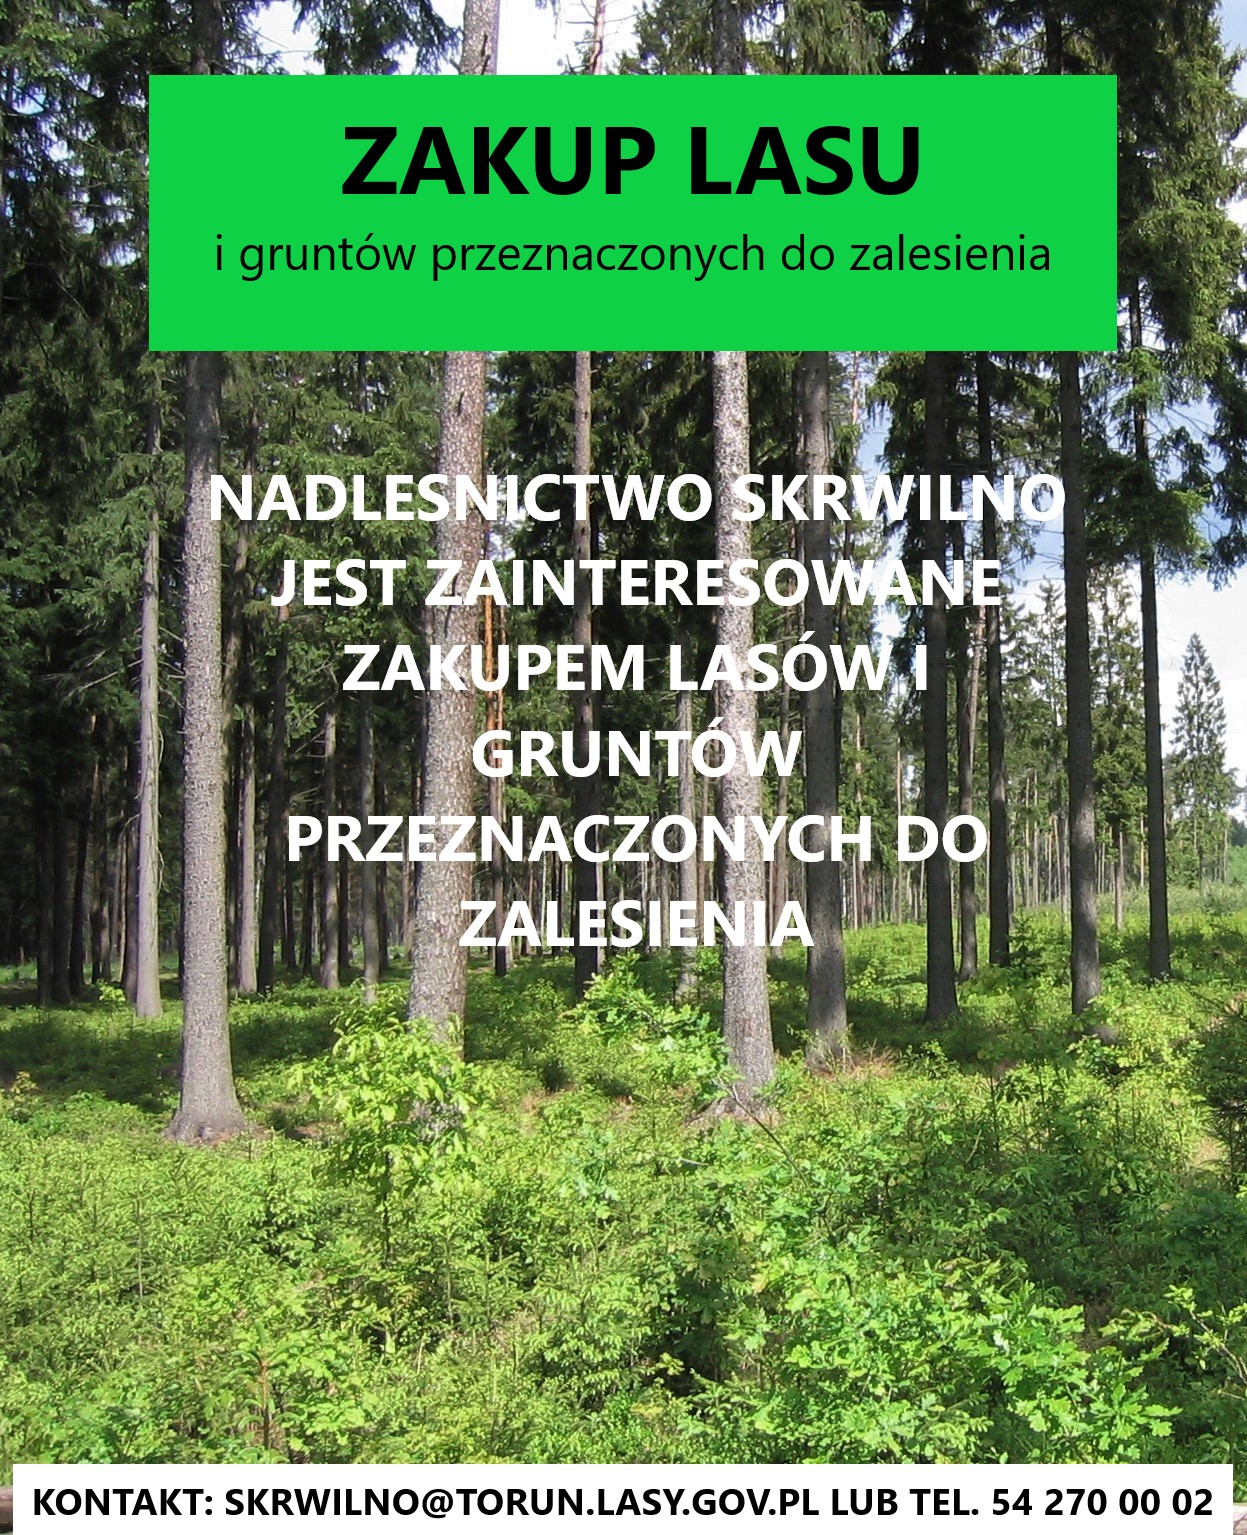 Zajawka przedstawia las z napisem Nadleśnictwo Skrwilno jest zainteresowane zakupem lasów i gruntów przeznaczonych do zalesienia.